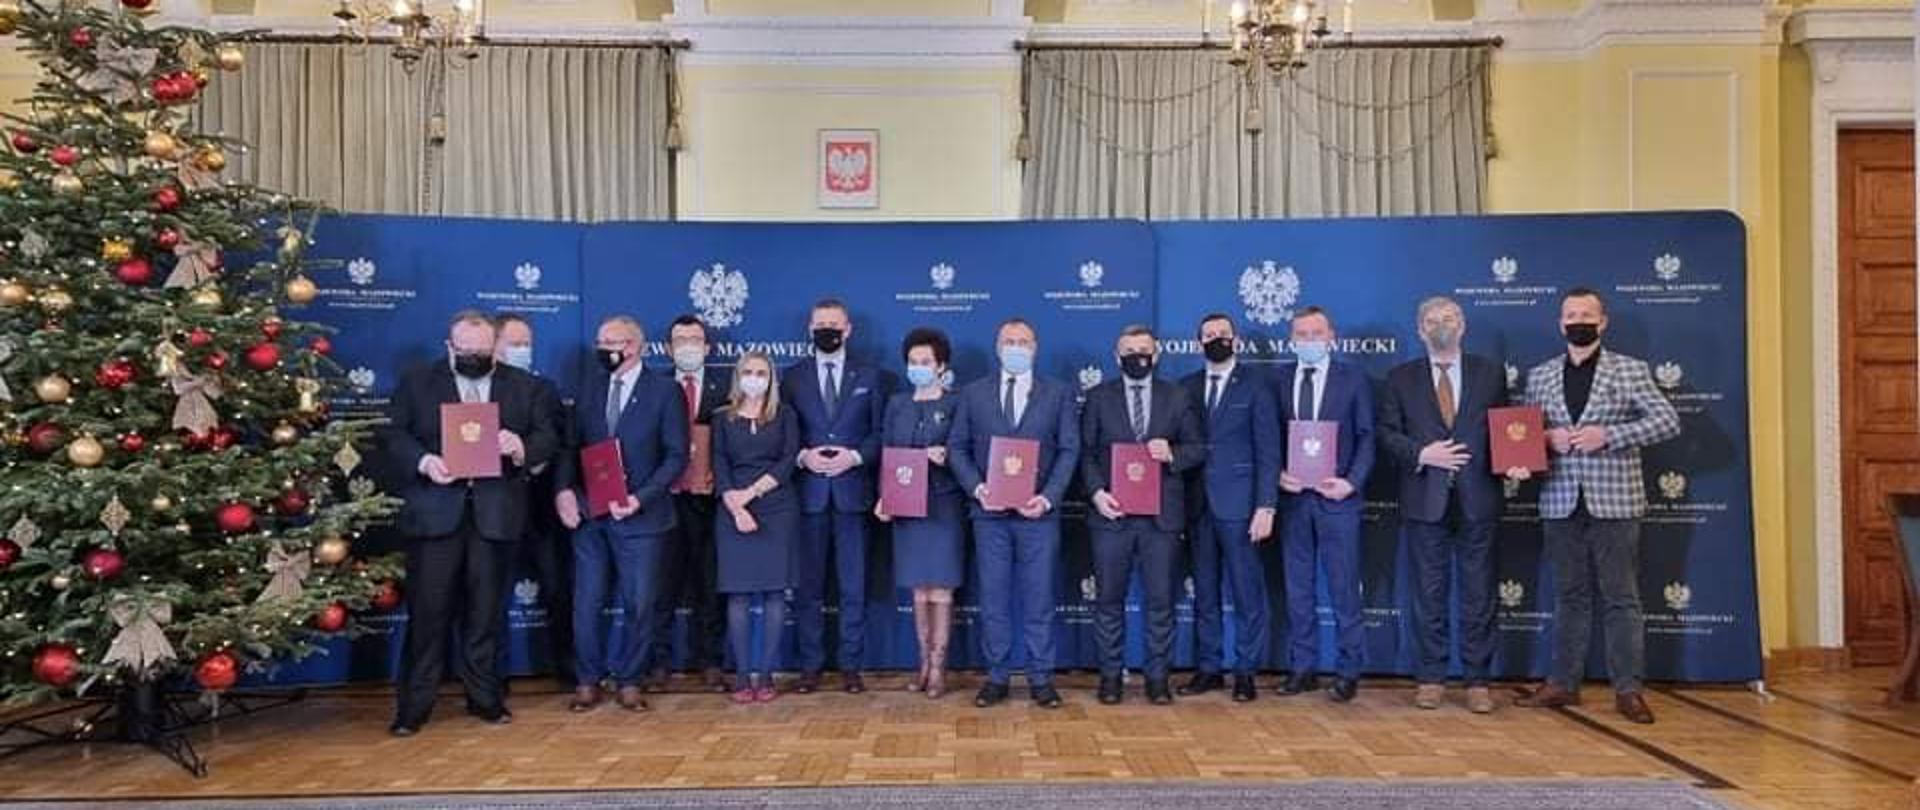 Podpisanie umowy w Mazowieckim Urzędzie Wojewódzkim 